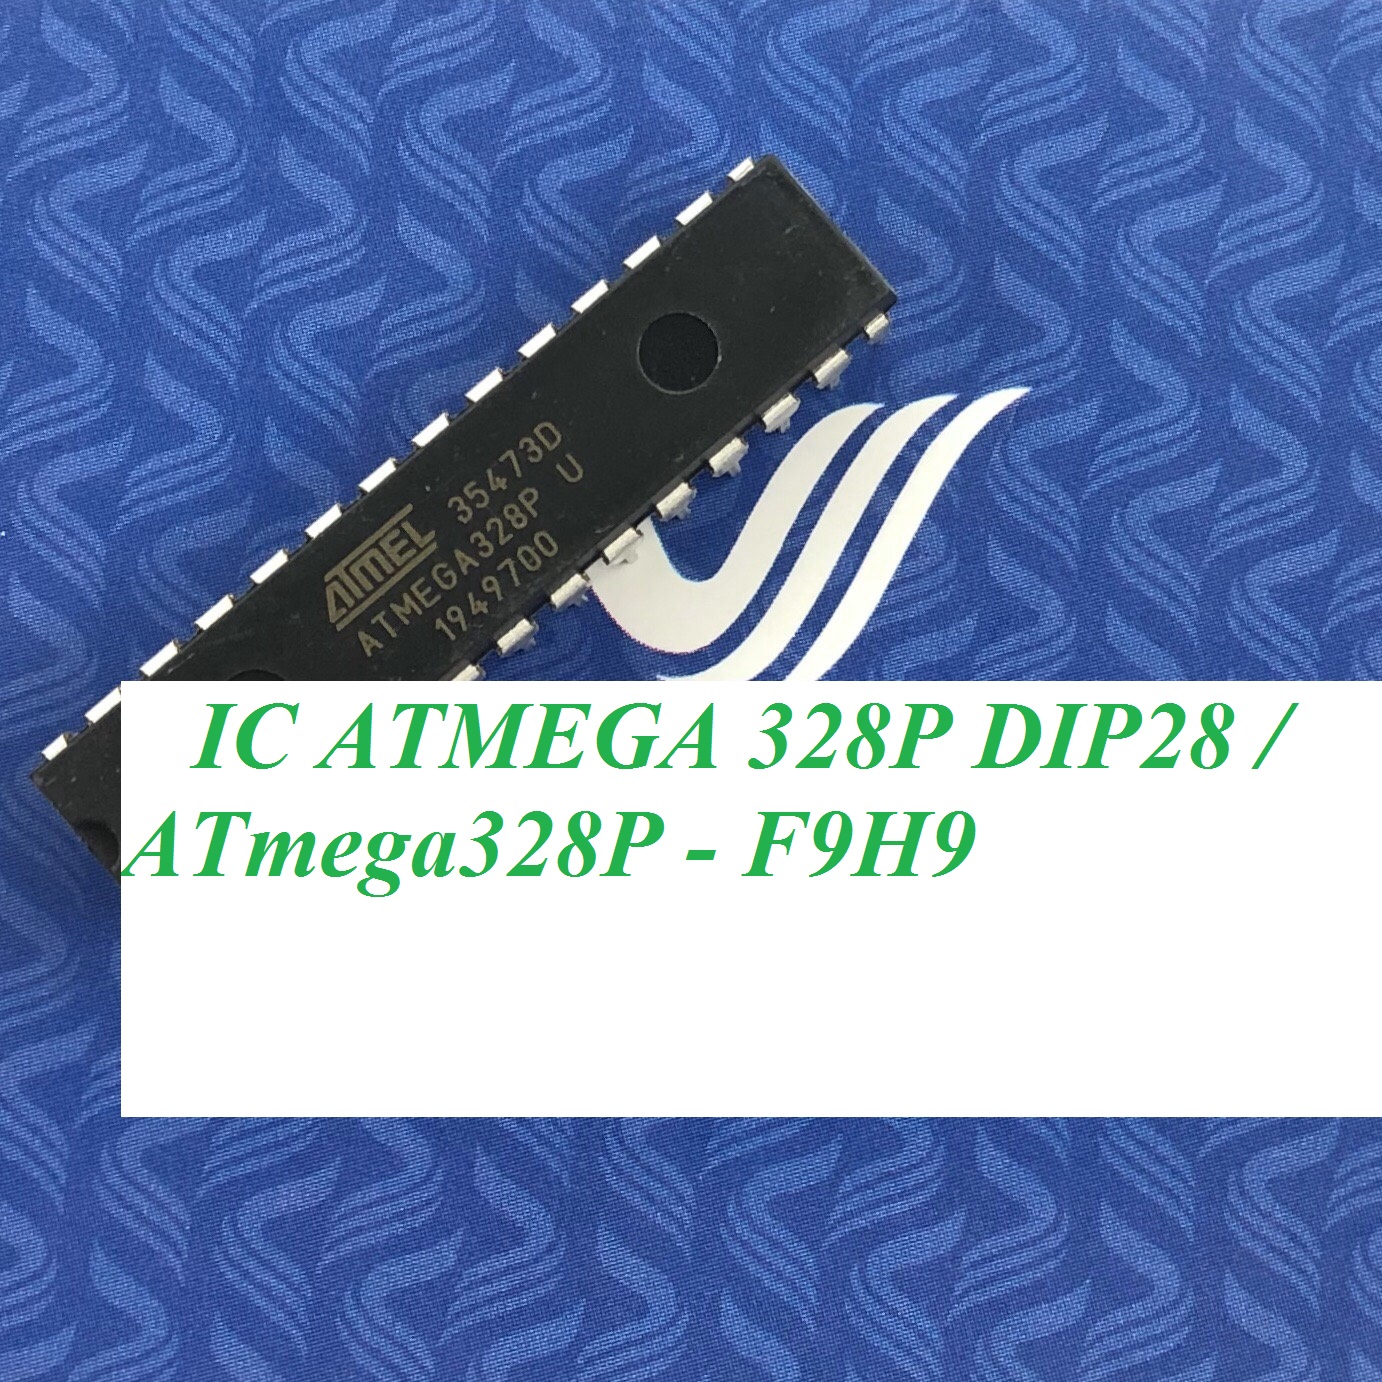 IC ATMEGA 328P DIP28 / ATmega328P - F9H9